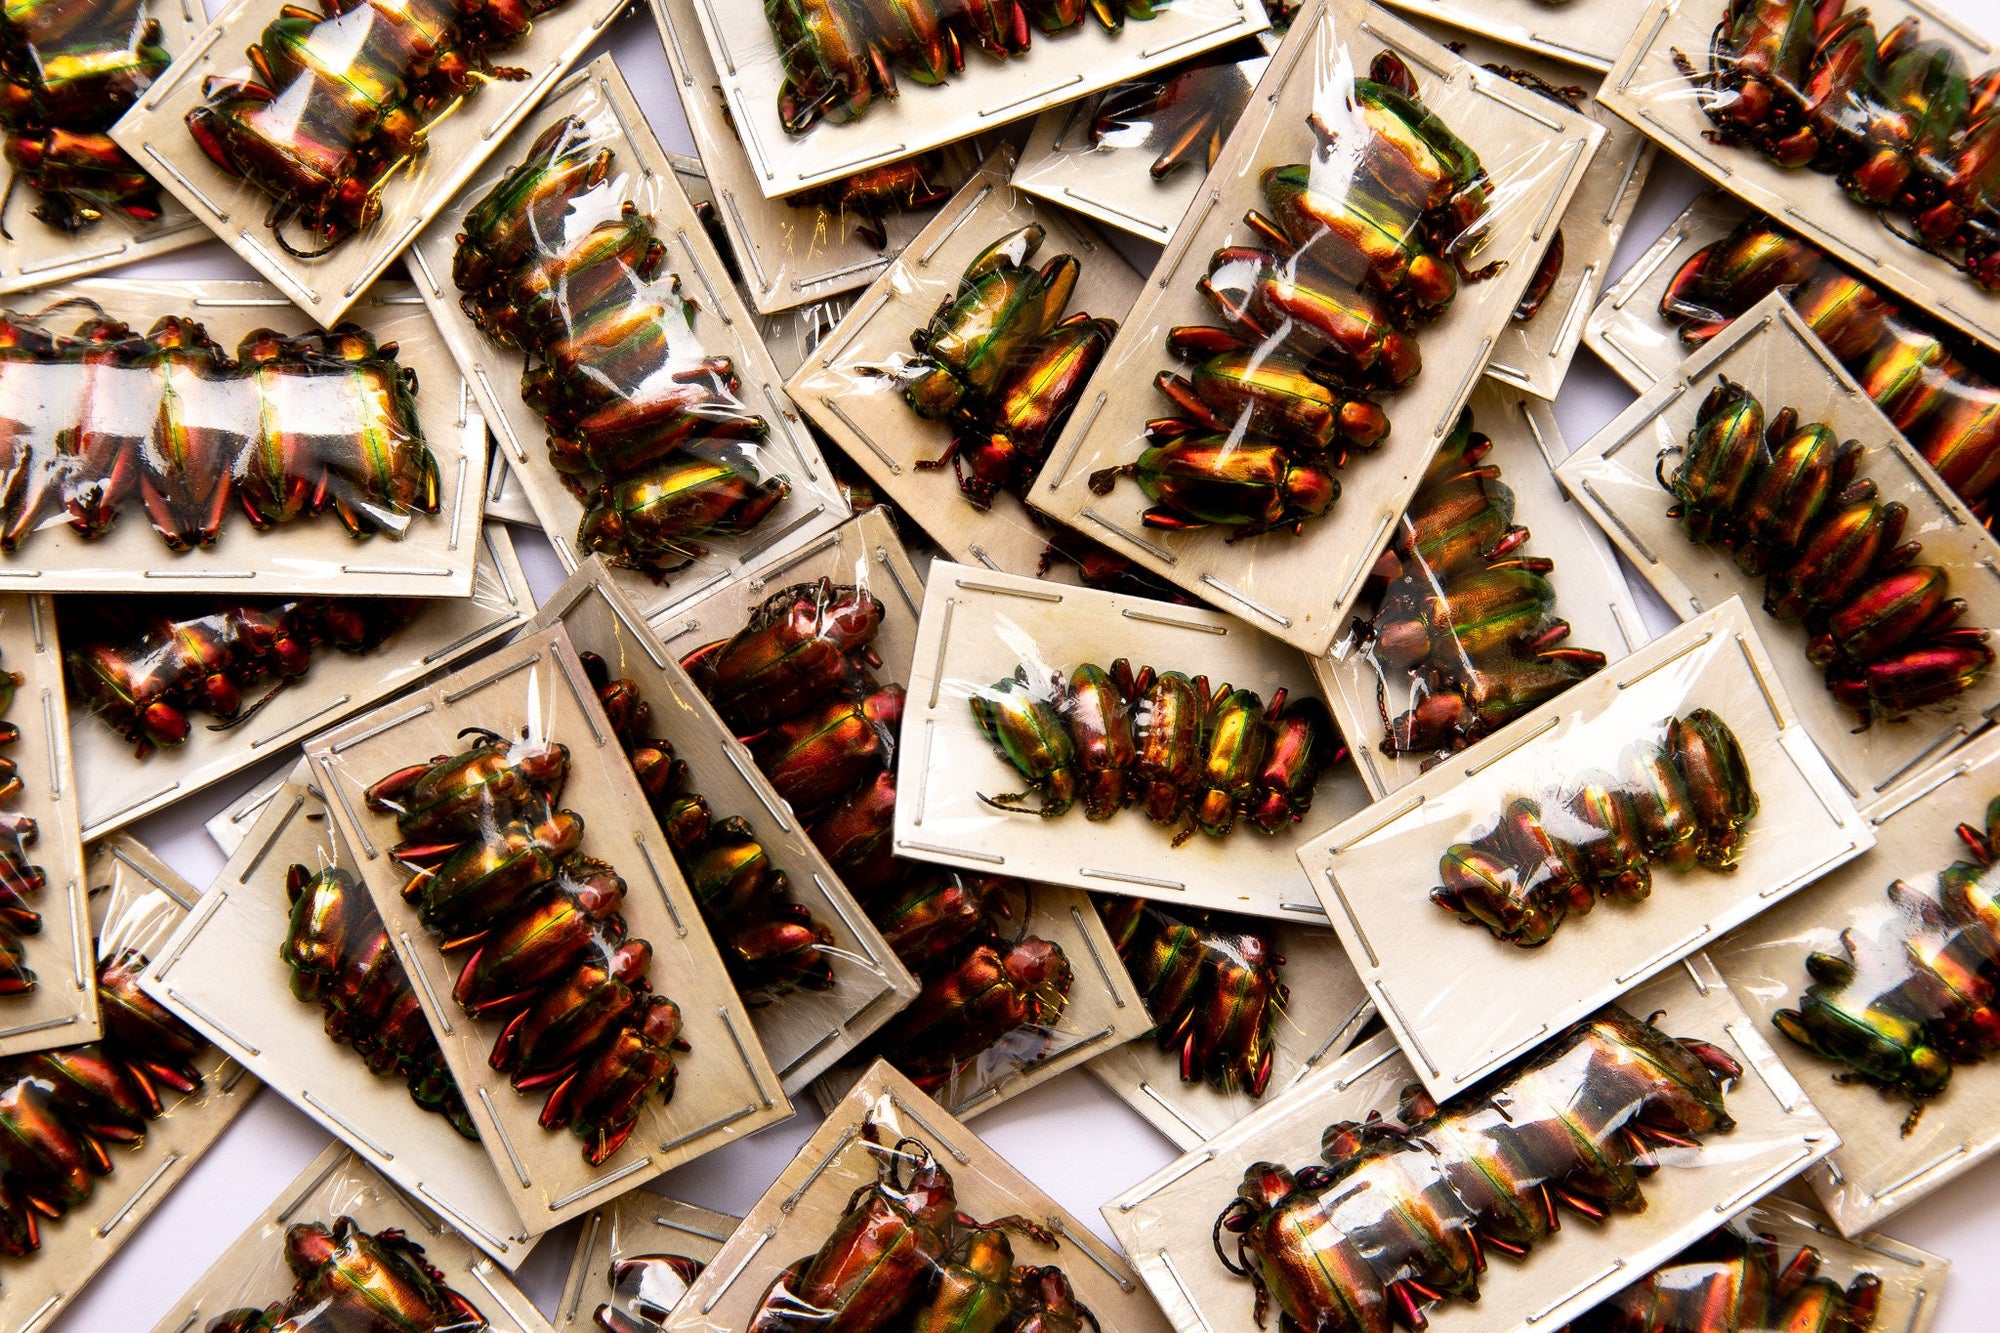 Pack of 10 Rainbow Beetles (Sagra laticollis) Java, A1 Real Entomology Specimens WHOLESALE